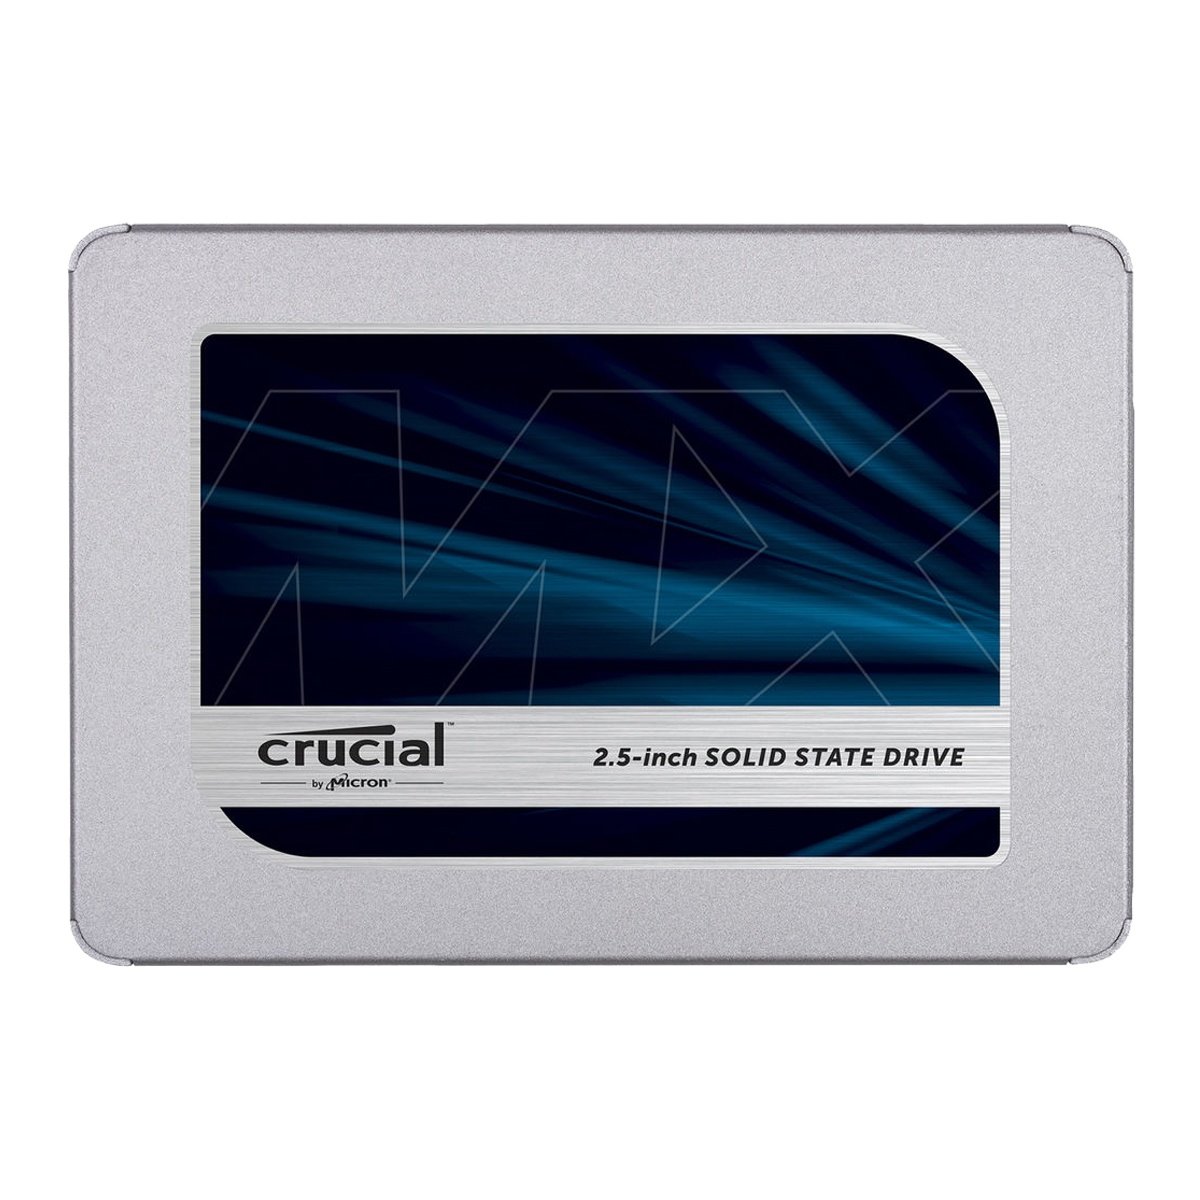 Crucial 500GB MX500 2.5" Daxili SSD